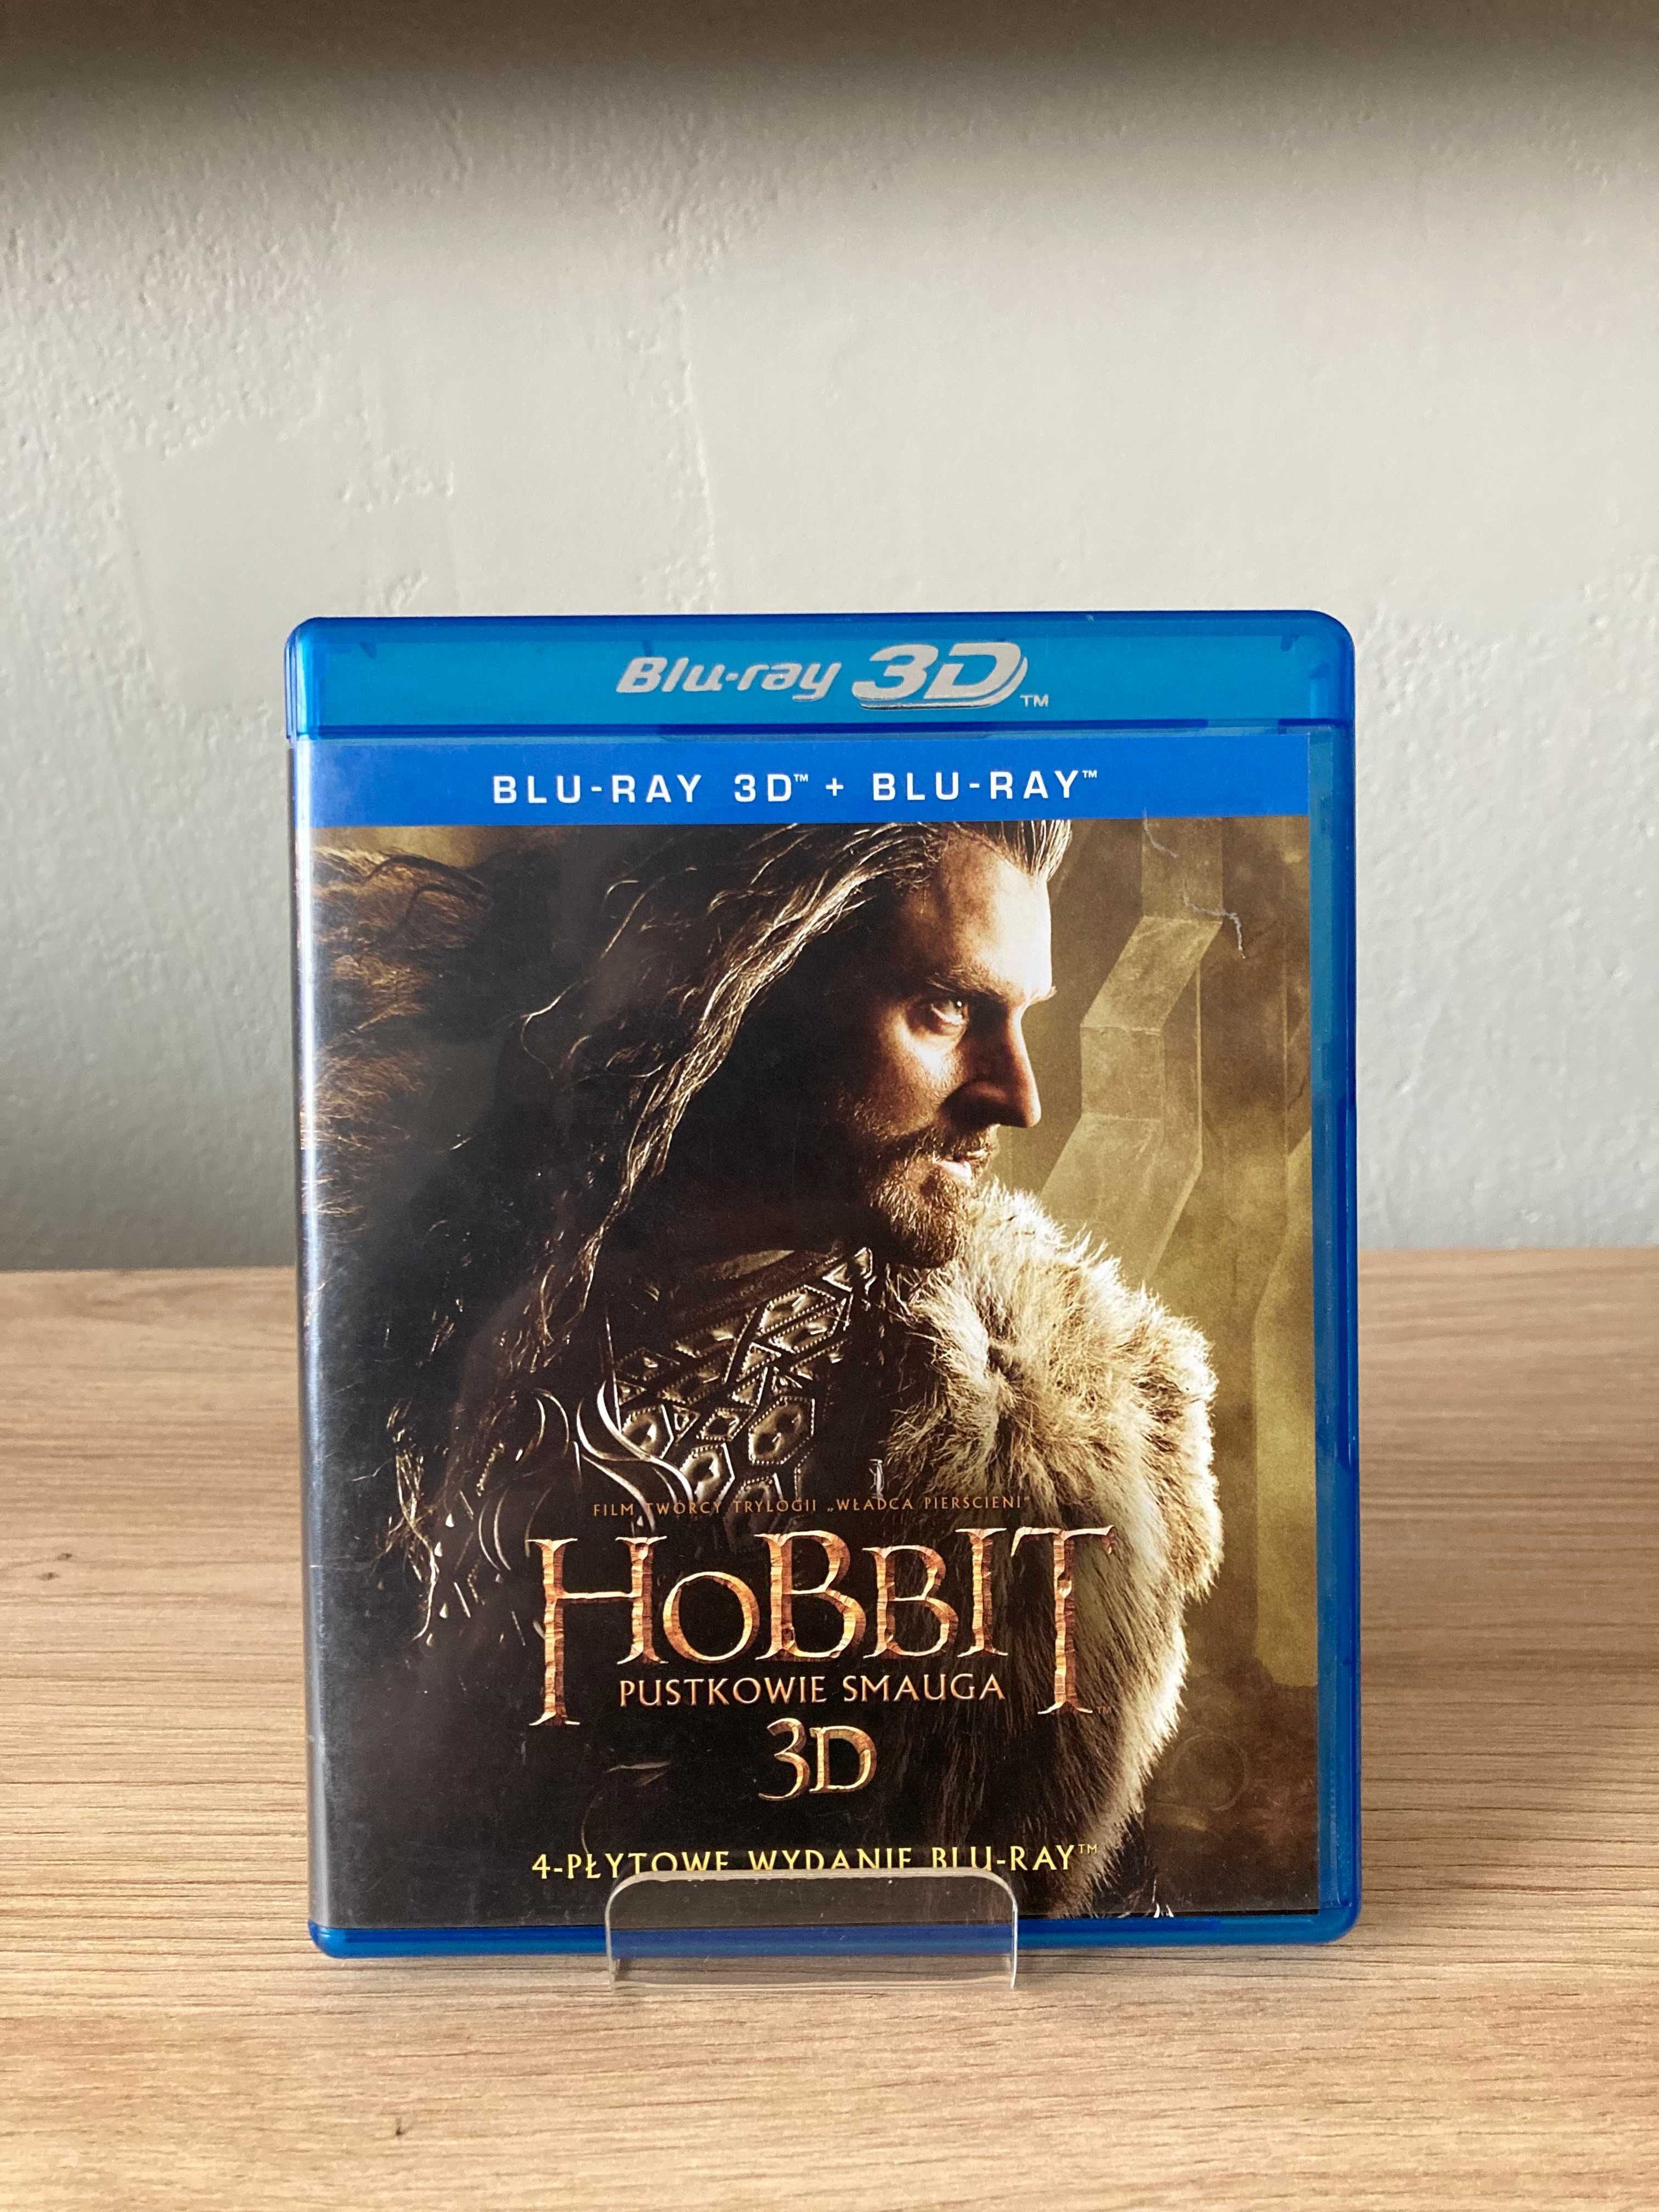 Hobbit Pustkowie Smauga 3D Blu-ray Dopiewo • OLX.pl